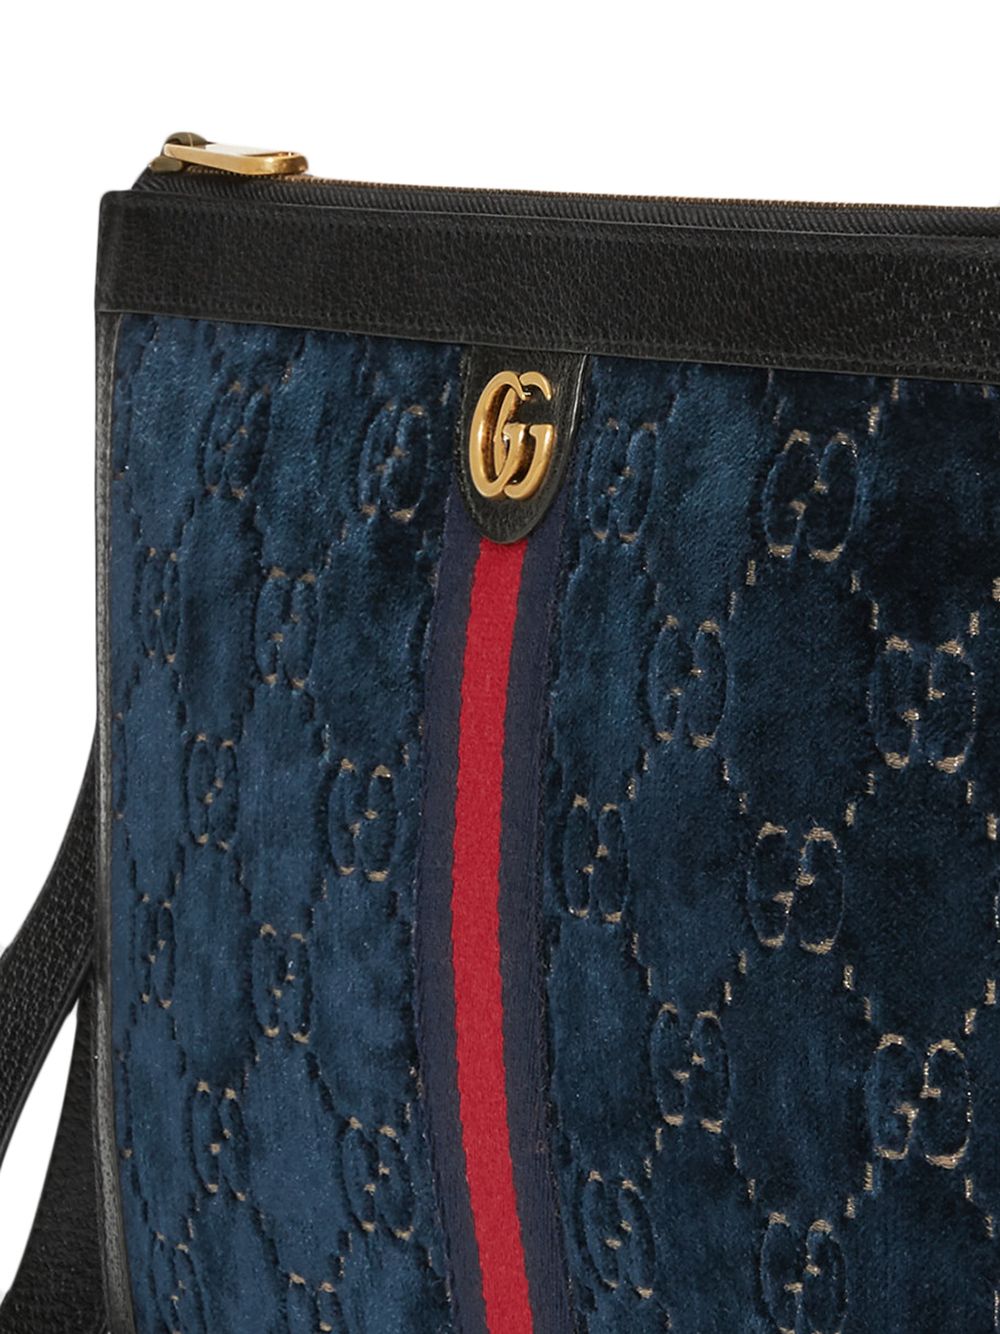 фото Gucci бархатный клатч с узором GG